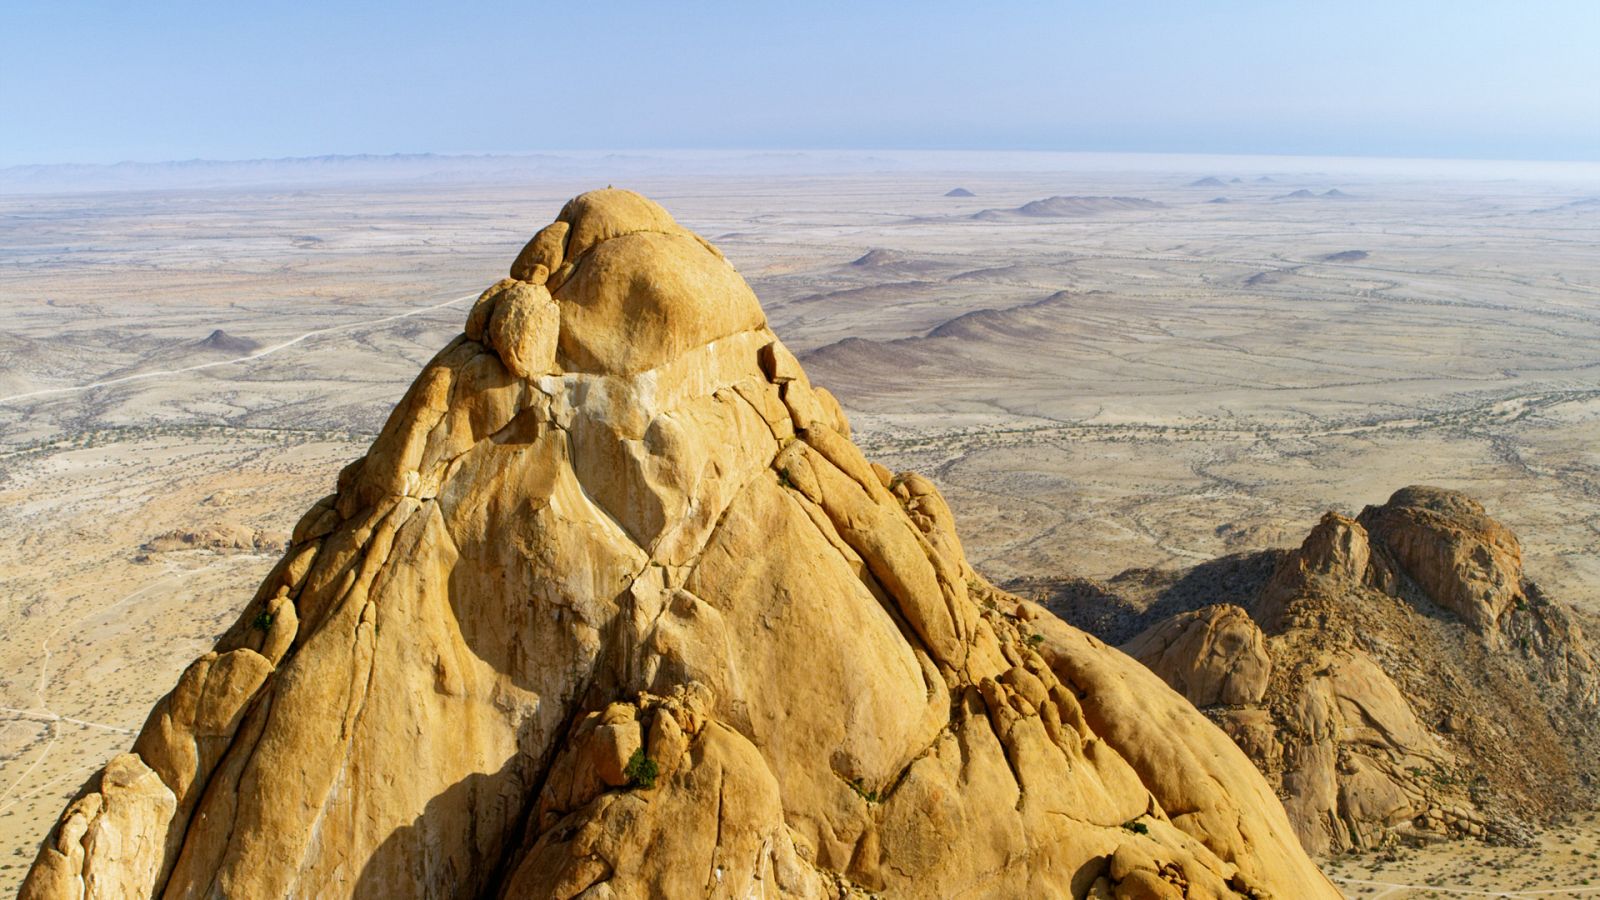 El desierto de Namib - África inmensa - Documental en RTVE